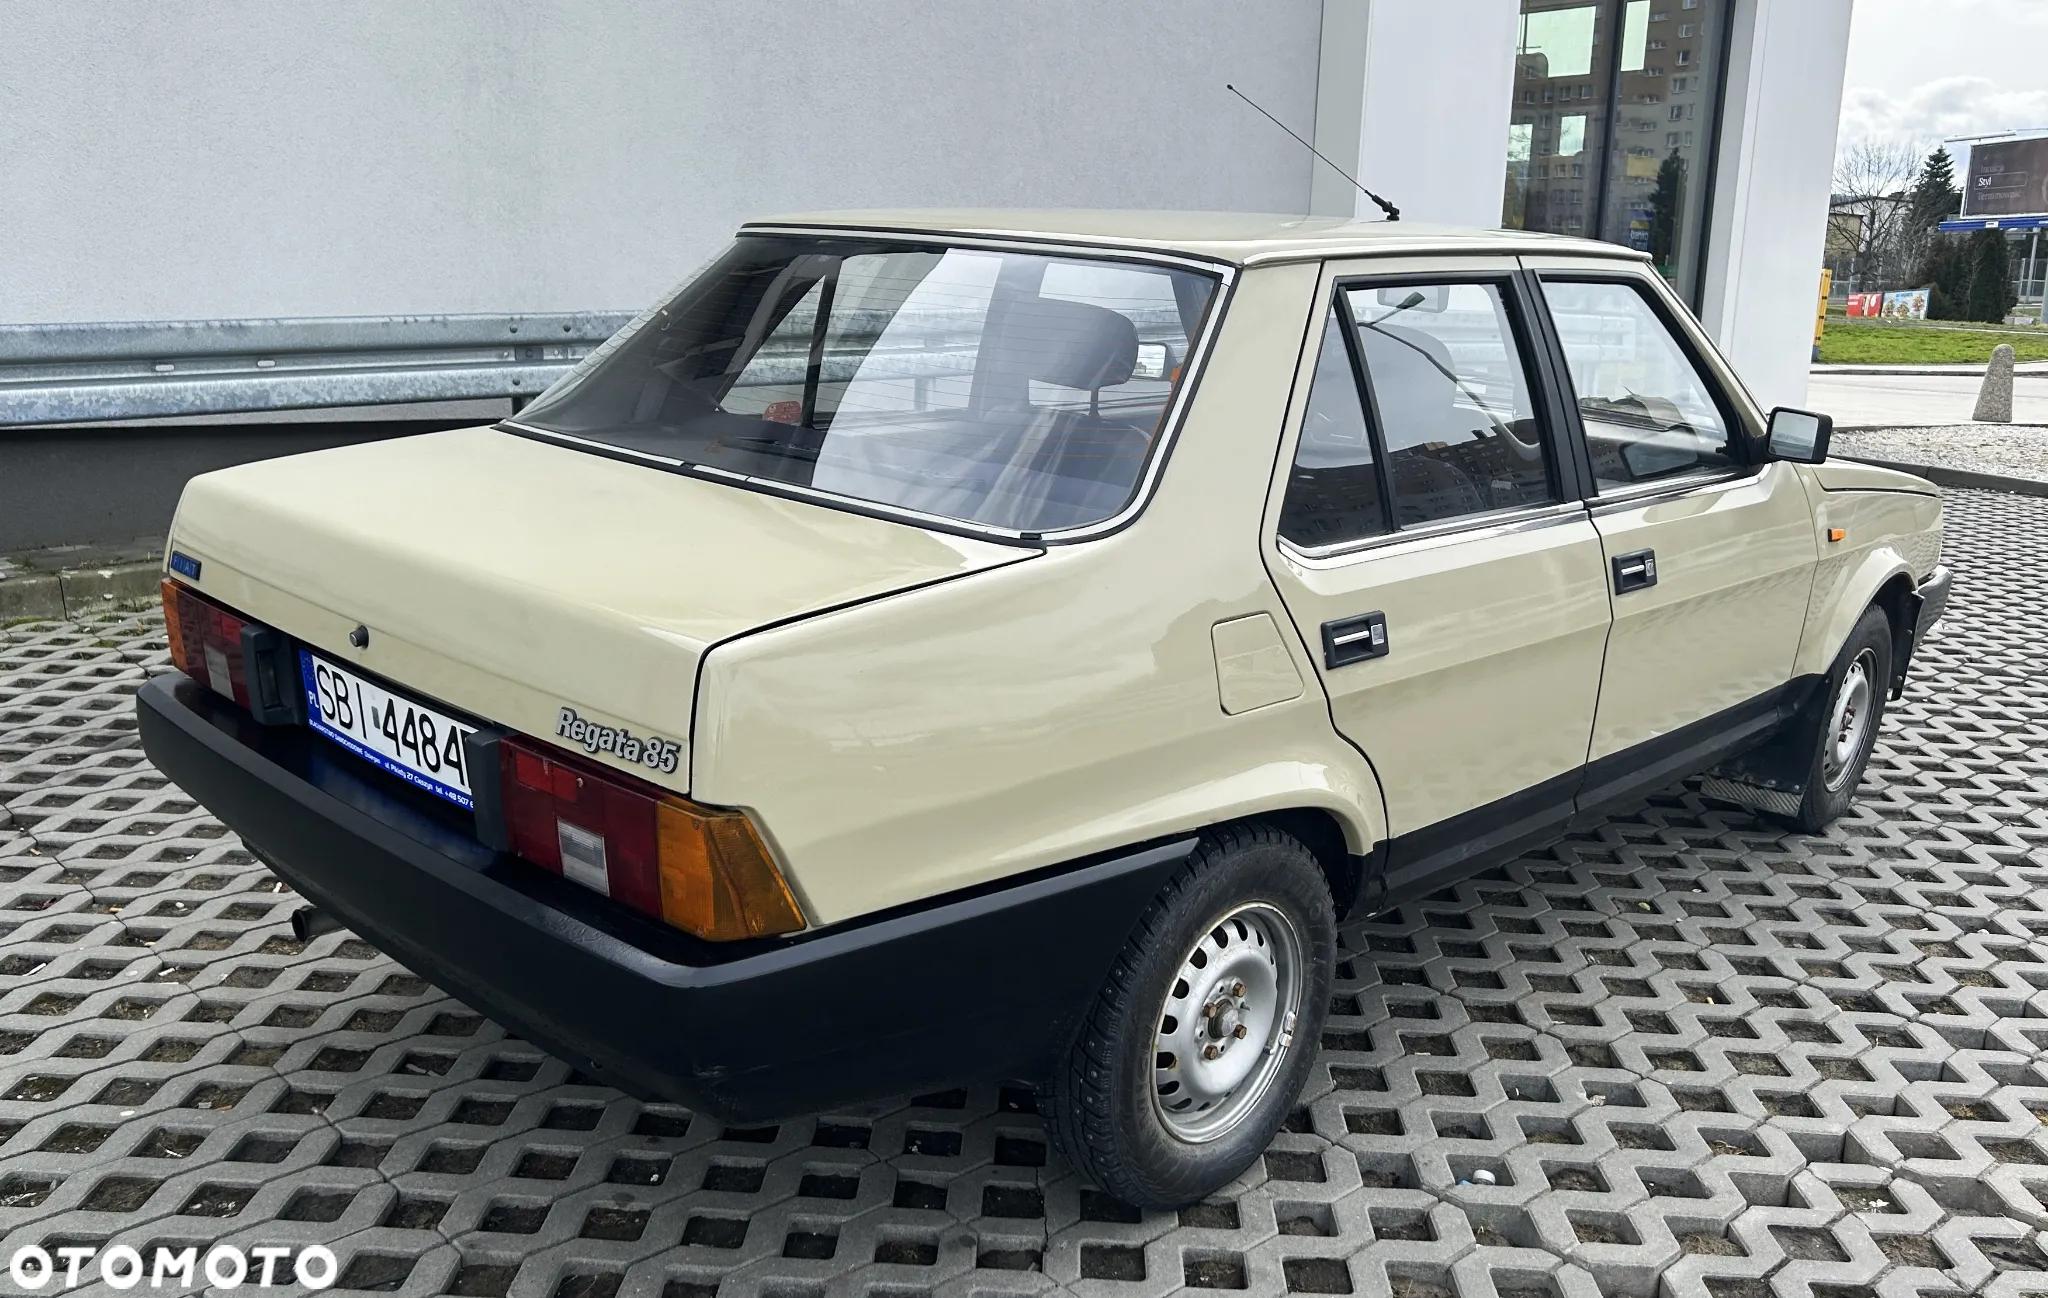 Fiat Regata 85 Super 1.6 - 4